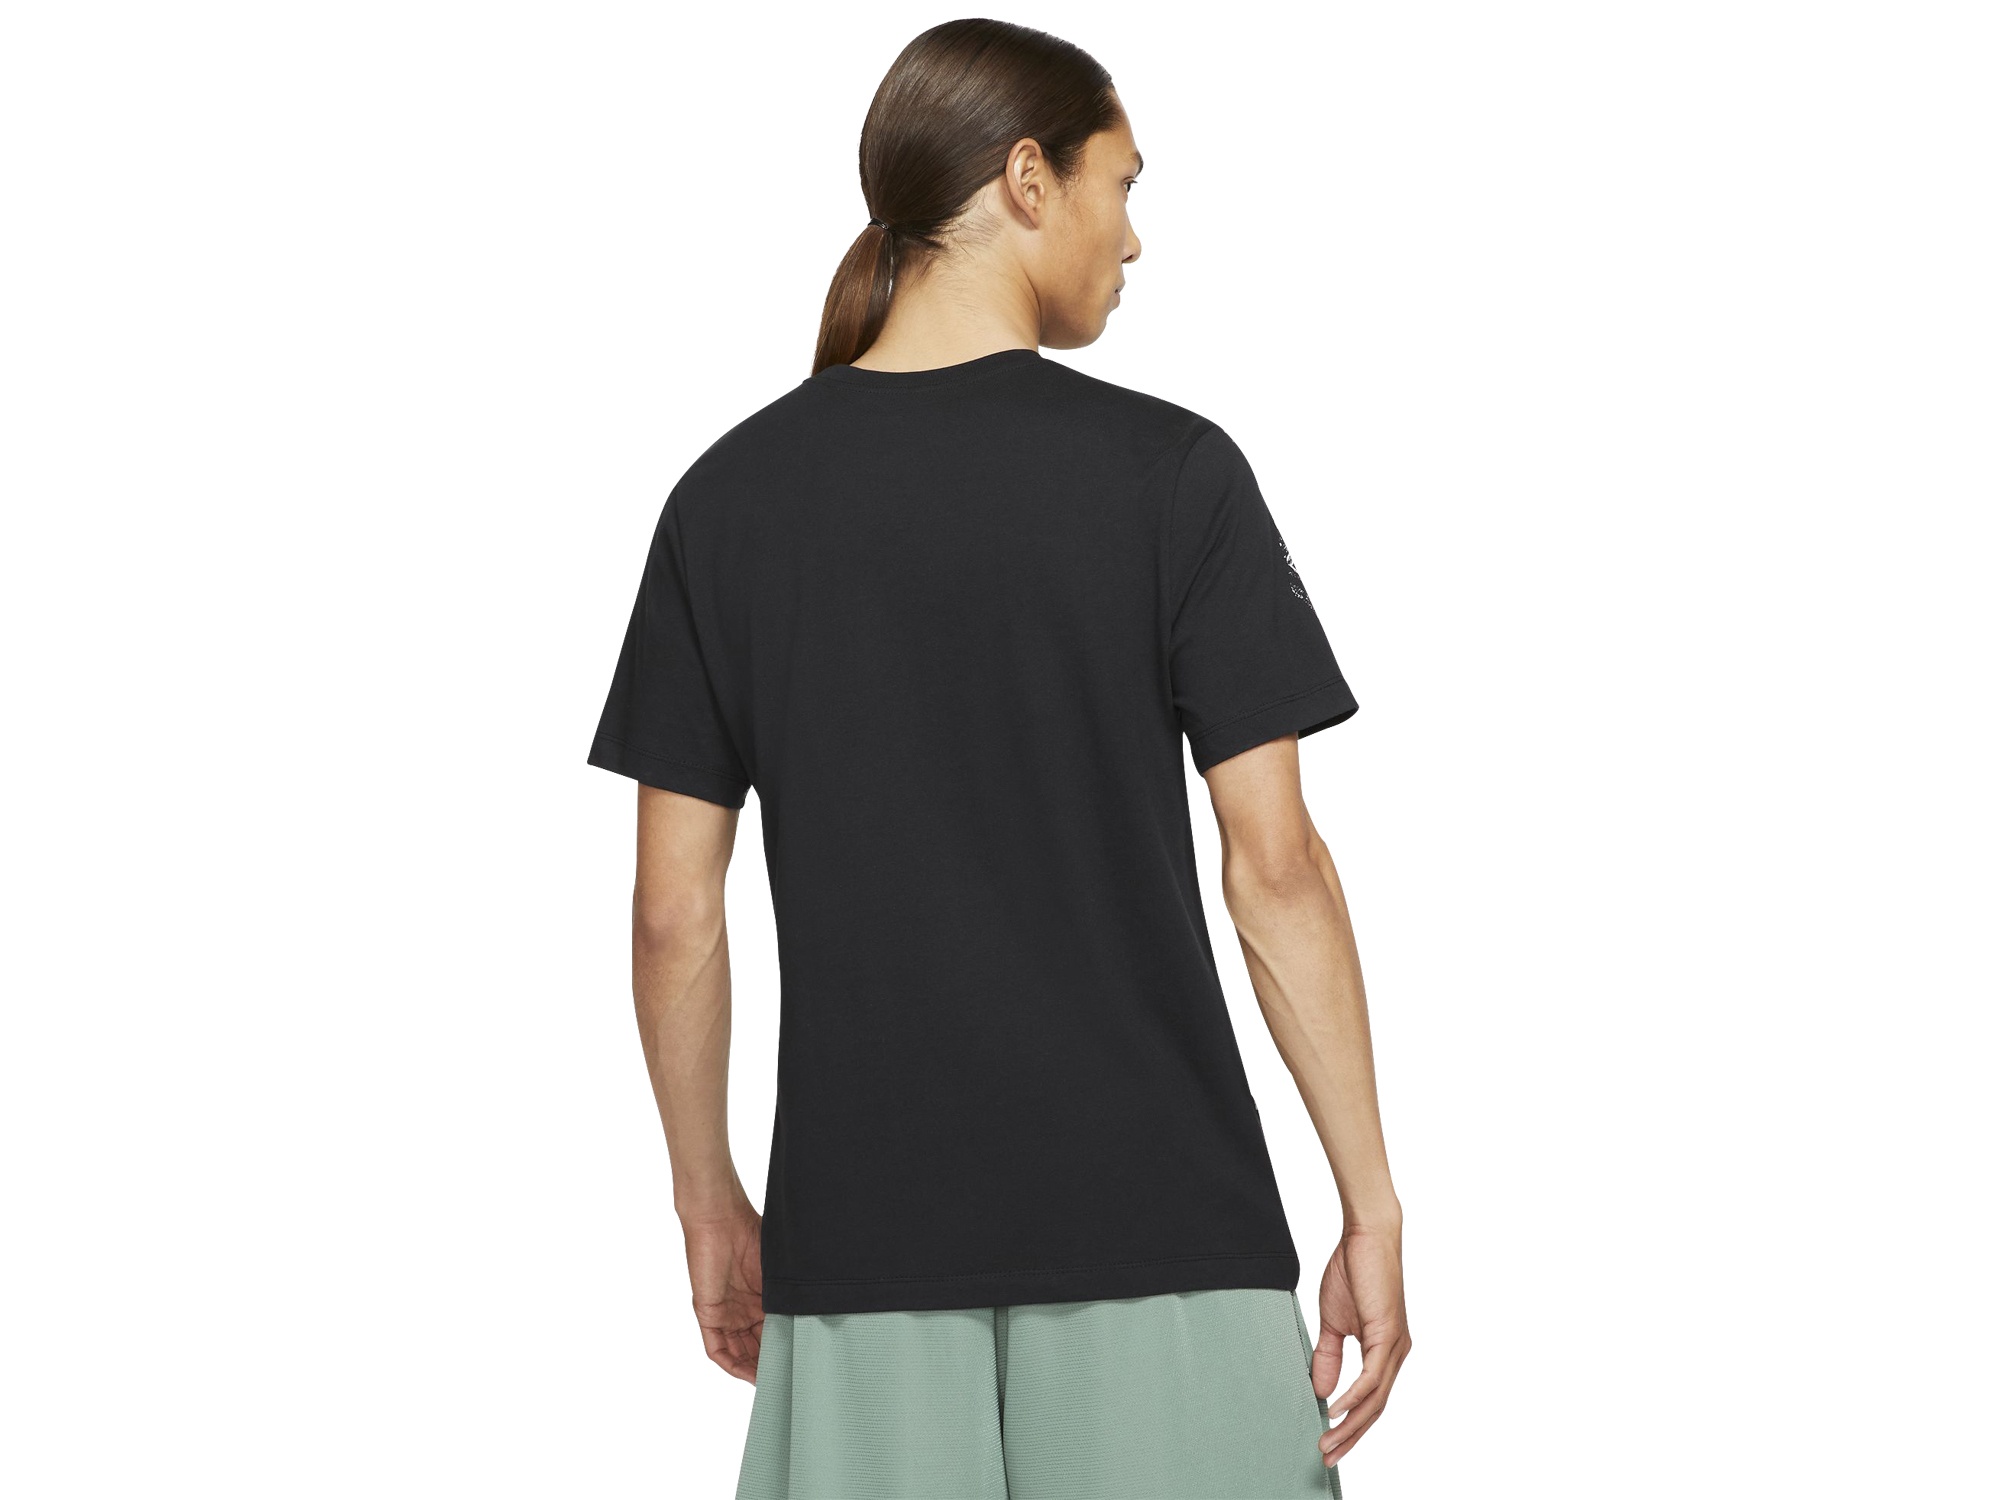 Nike "NY vs. NY" T-Shirt